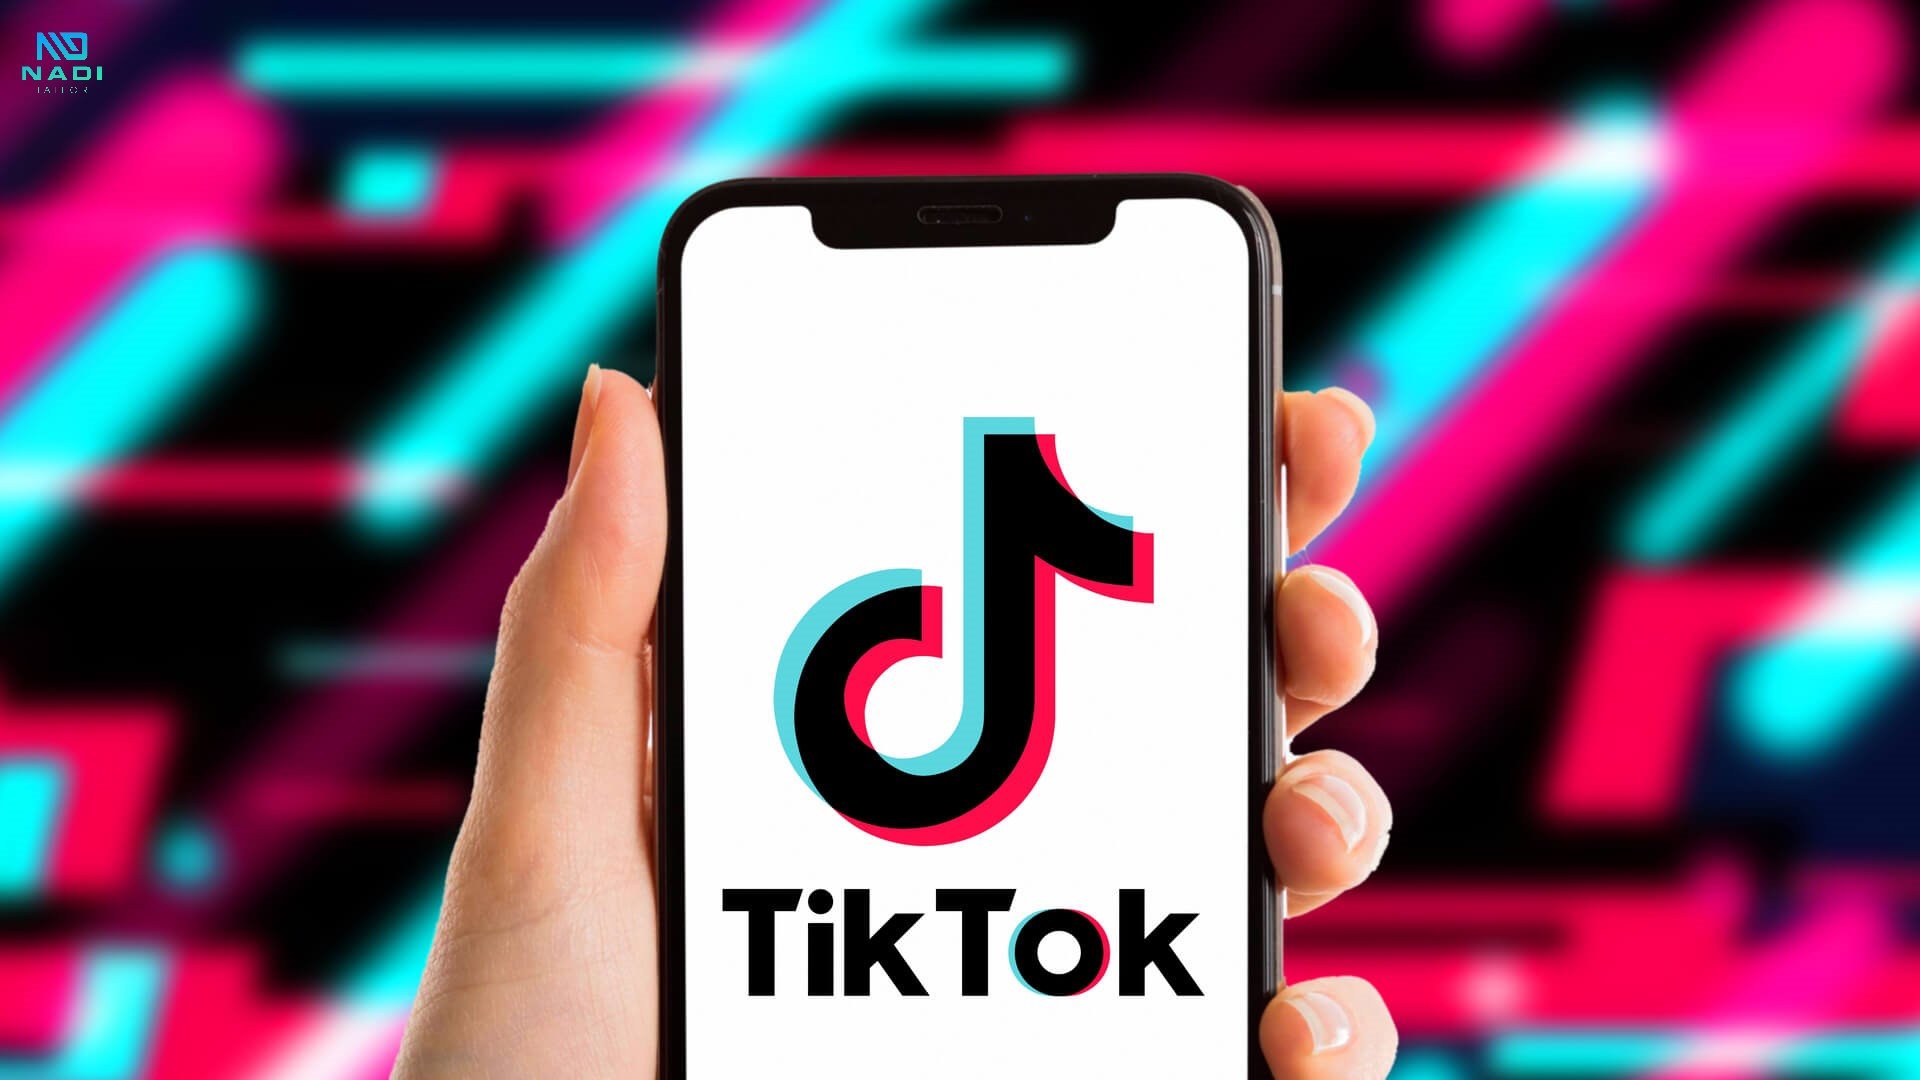 TikTok đã tăng vọt với quá trình chuyển đổi sang nội dung video; và phần lớn nội dung được tạo bằng TikTok cũng sẽ xuất hiện trên Instagram